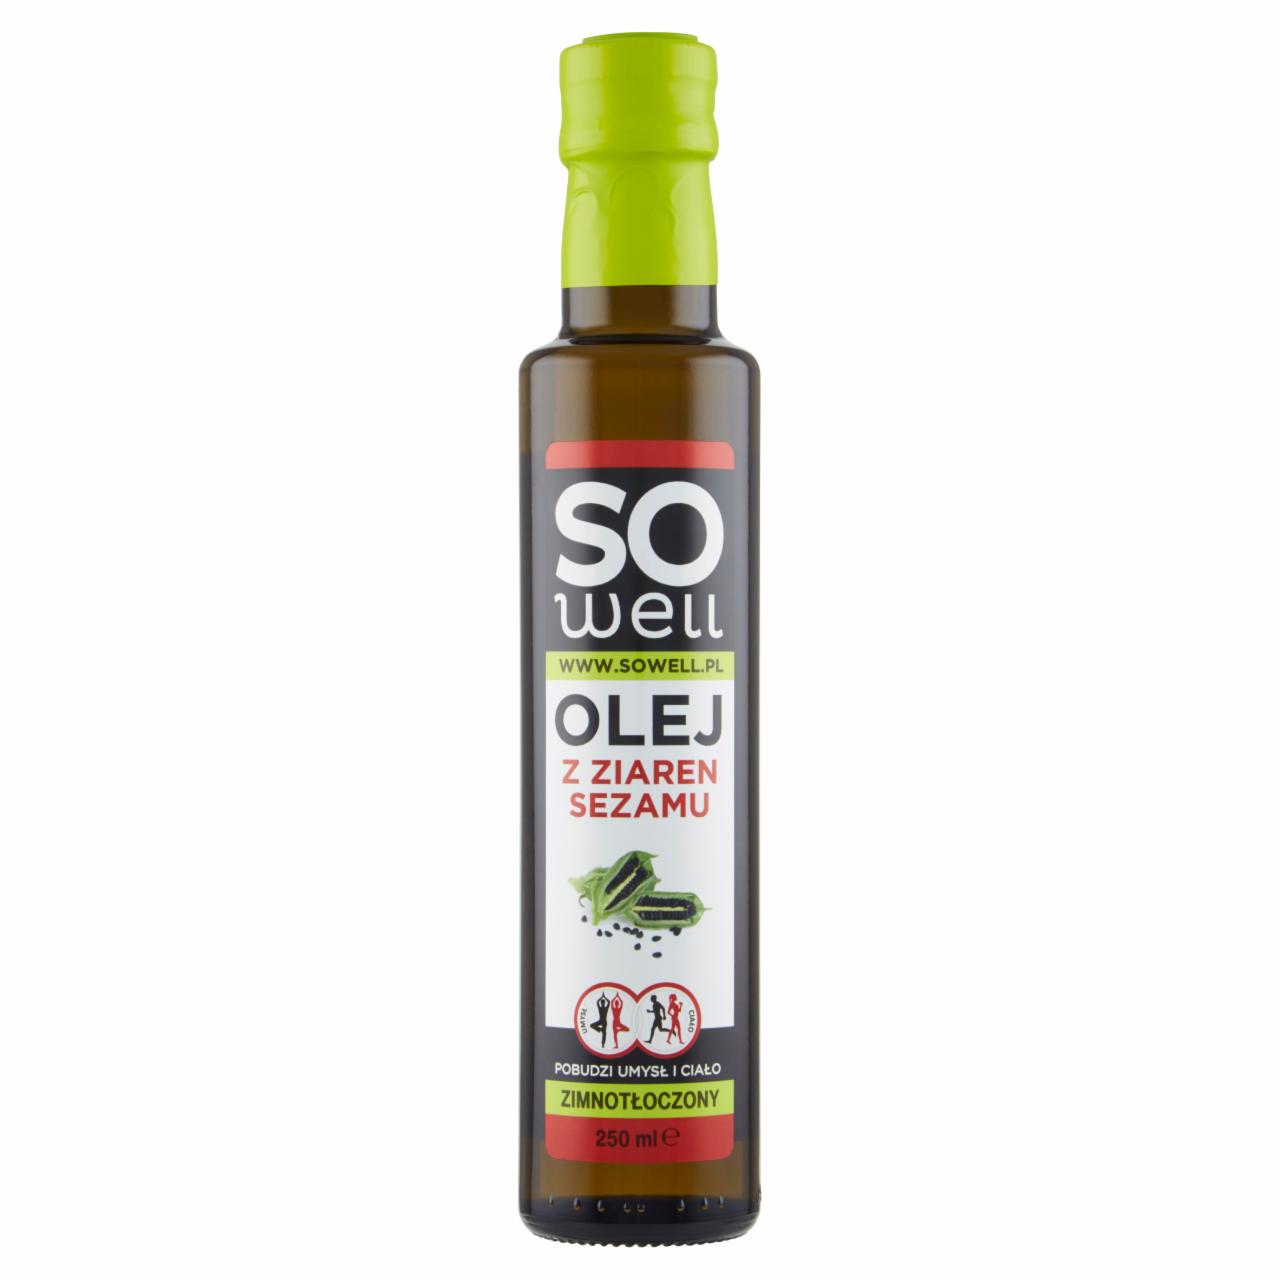 Zdjęcia - So Well Olej z ziaren sezamu 250 ml